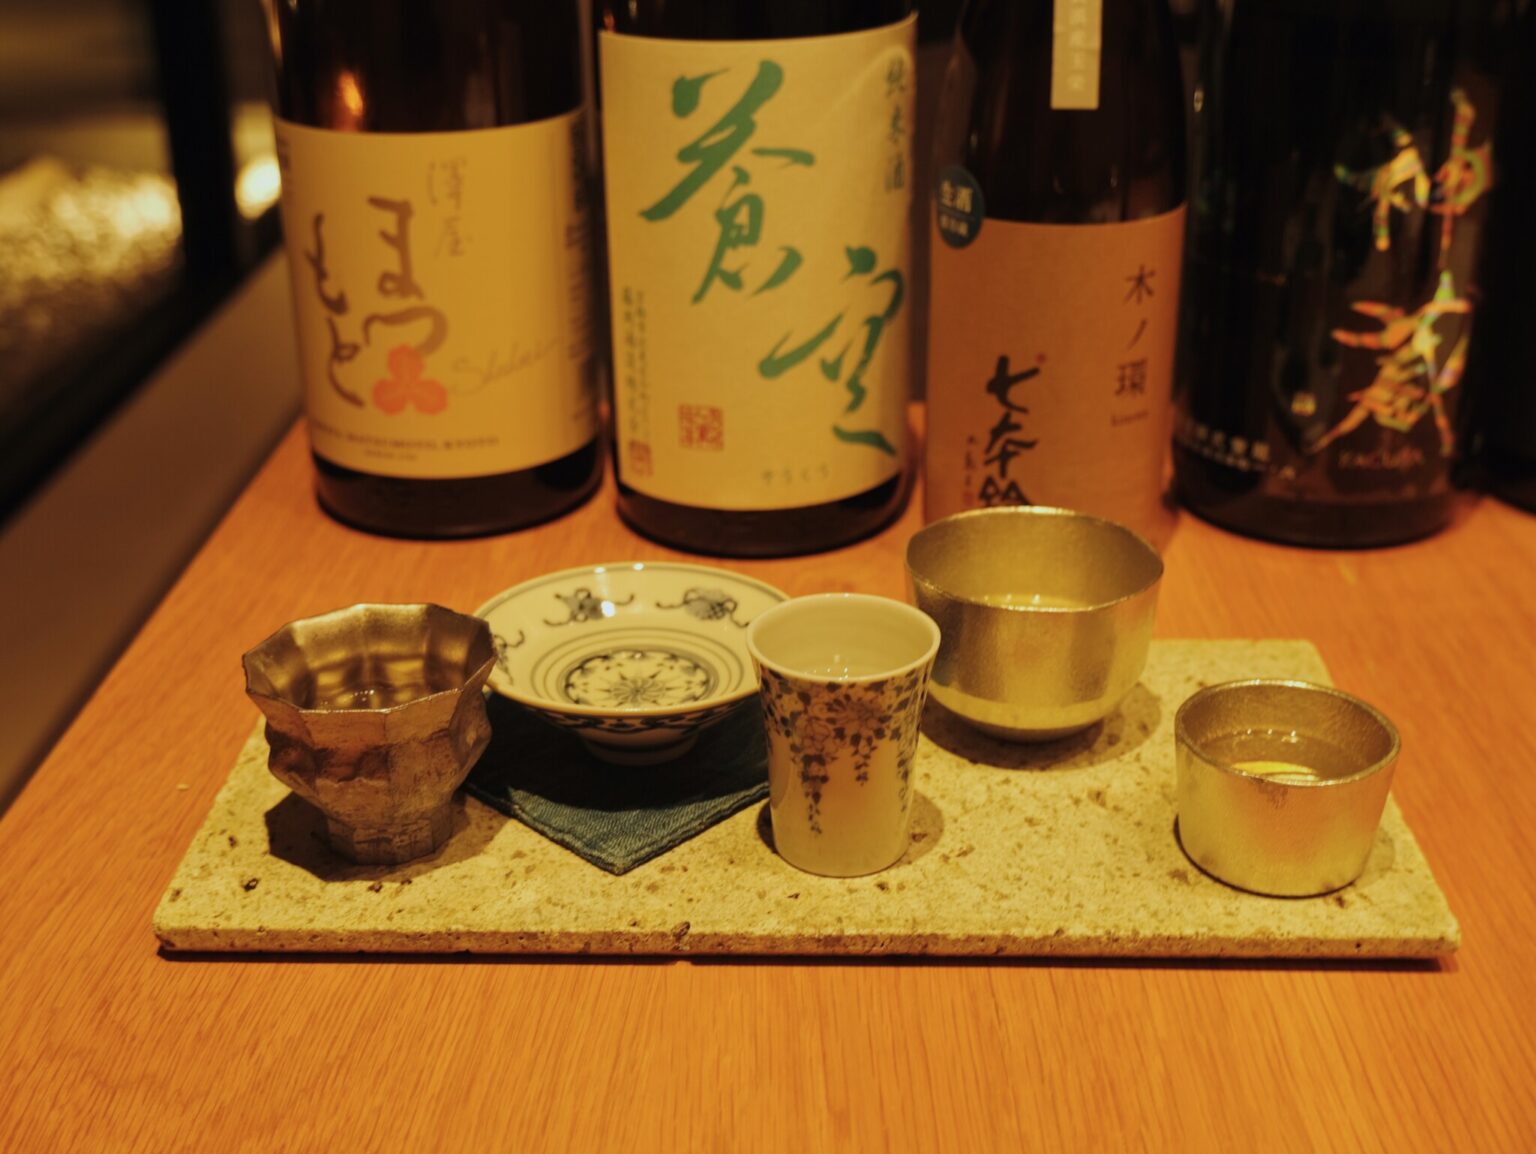 京丹後や伏見エリアの小規模生産蔵の貴重な日本酒が揃っていました。お店の方が丁寧にお酒の特徴や、生産者のストーリーをお話ししてくださります。